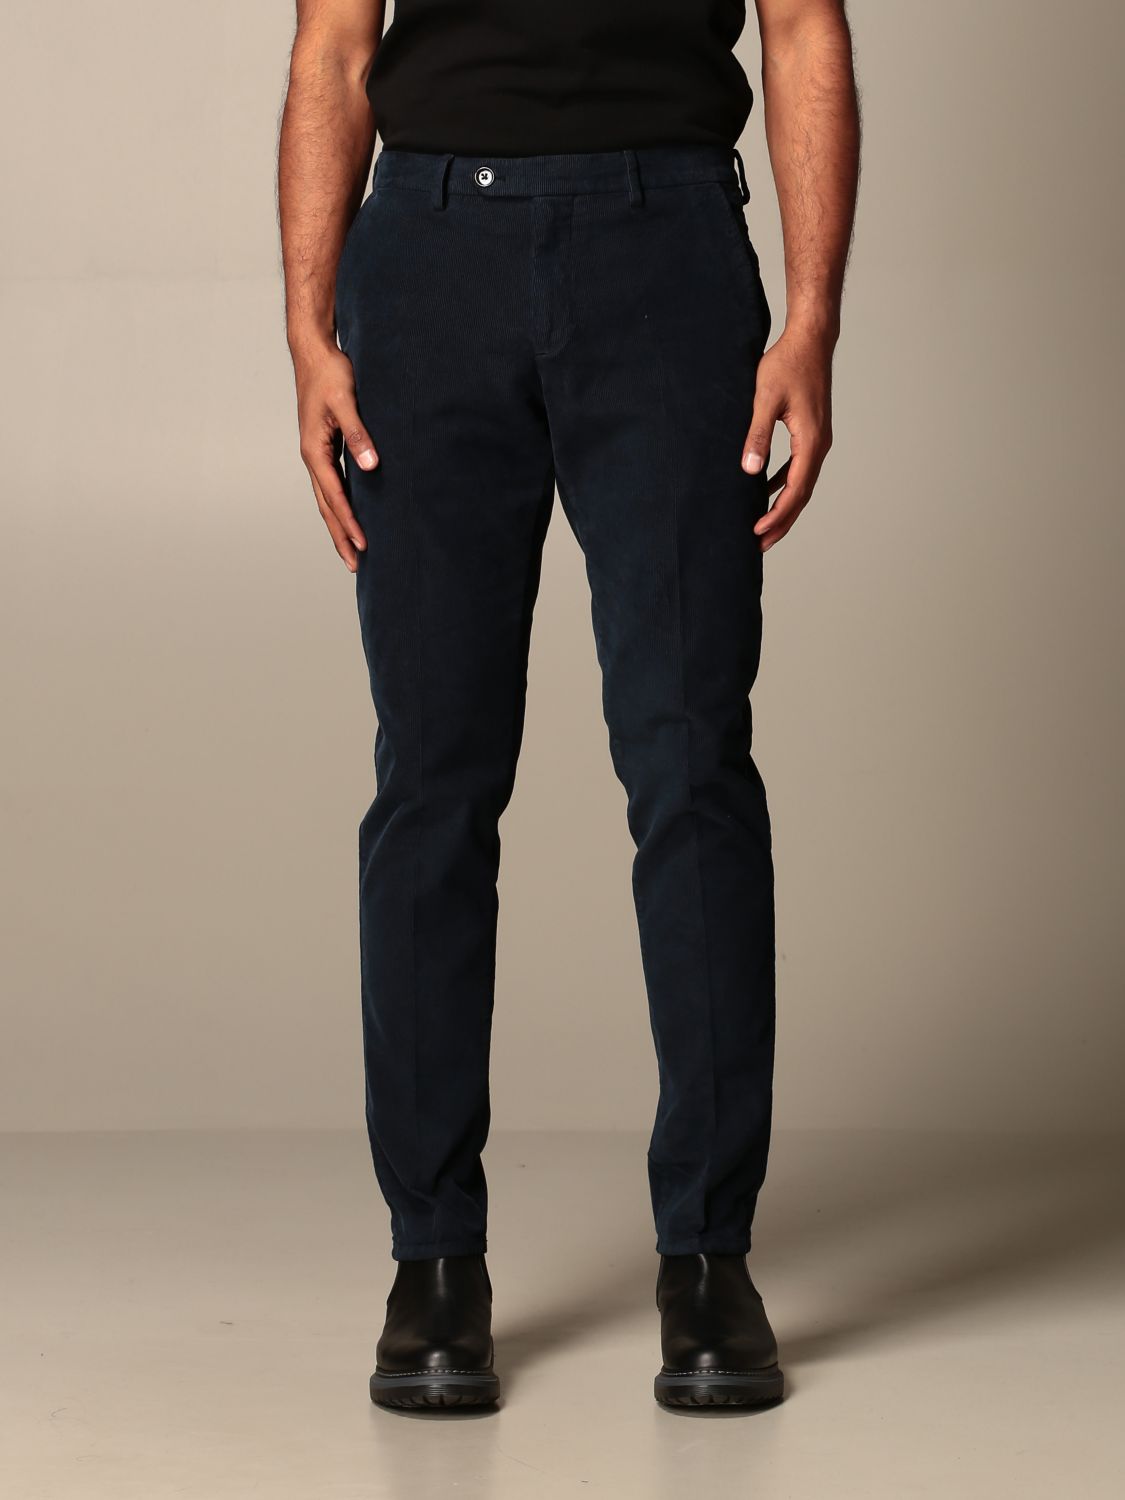 GTA PANTALONI: pants for man - Navy | Gta Pantaloni pants DDE01E 28480 ...